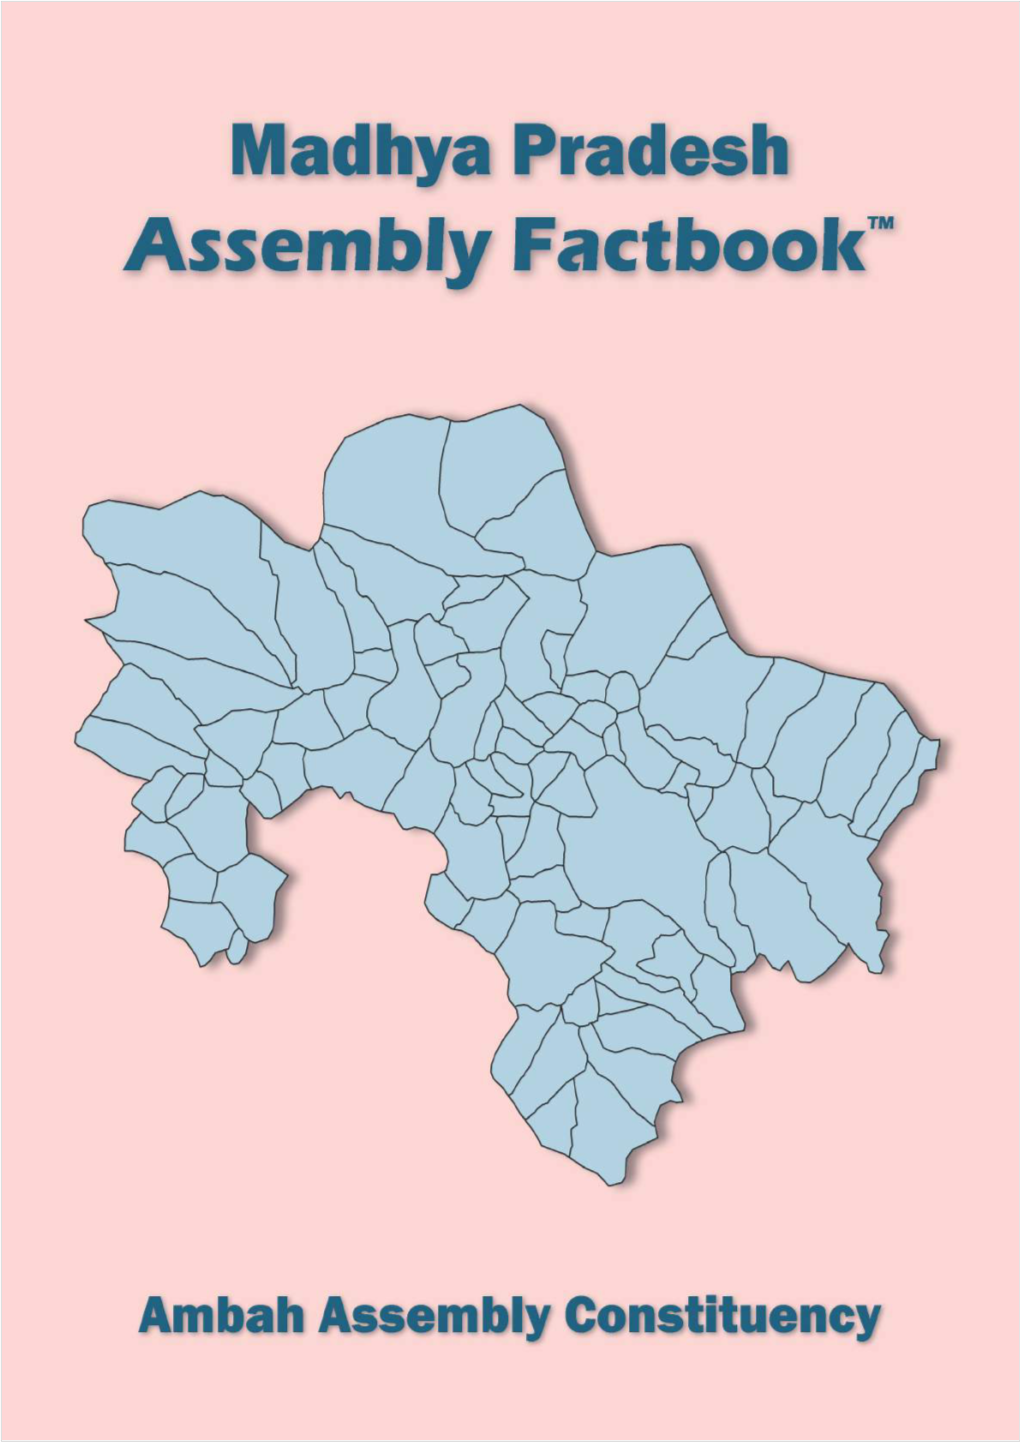 Ambah Assembly Madhya Pradesh Factbook